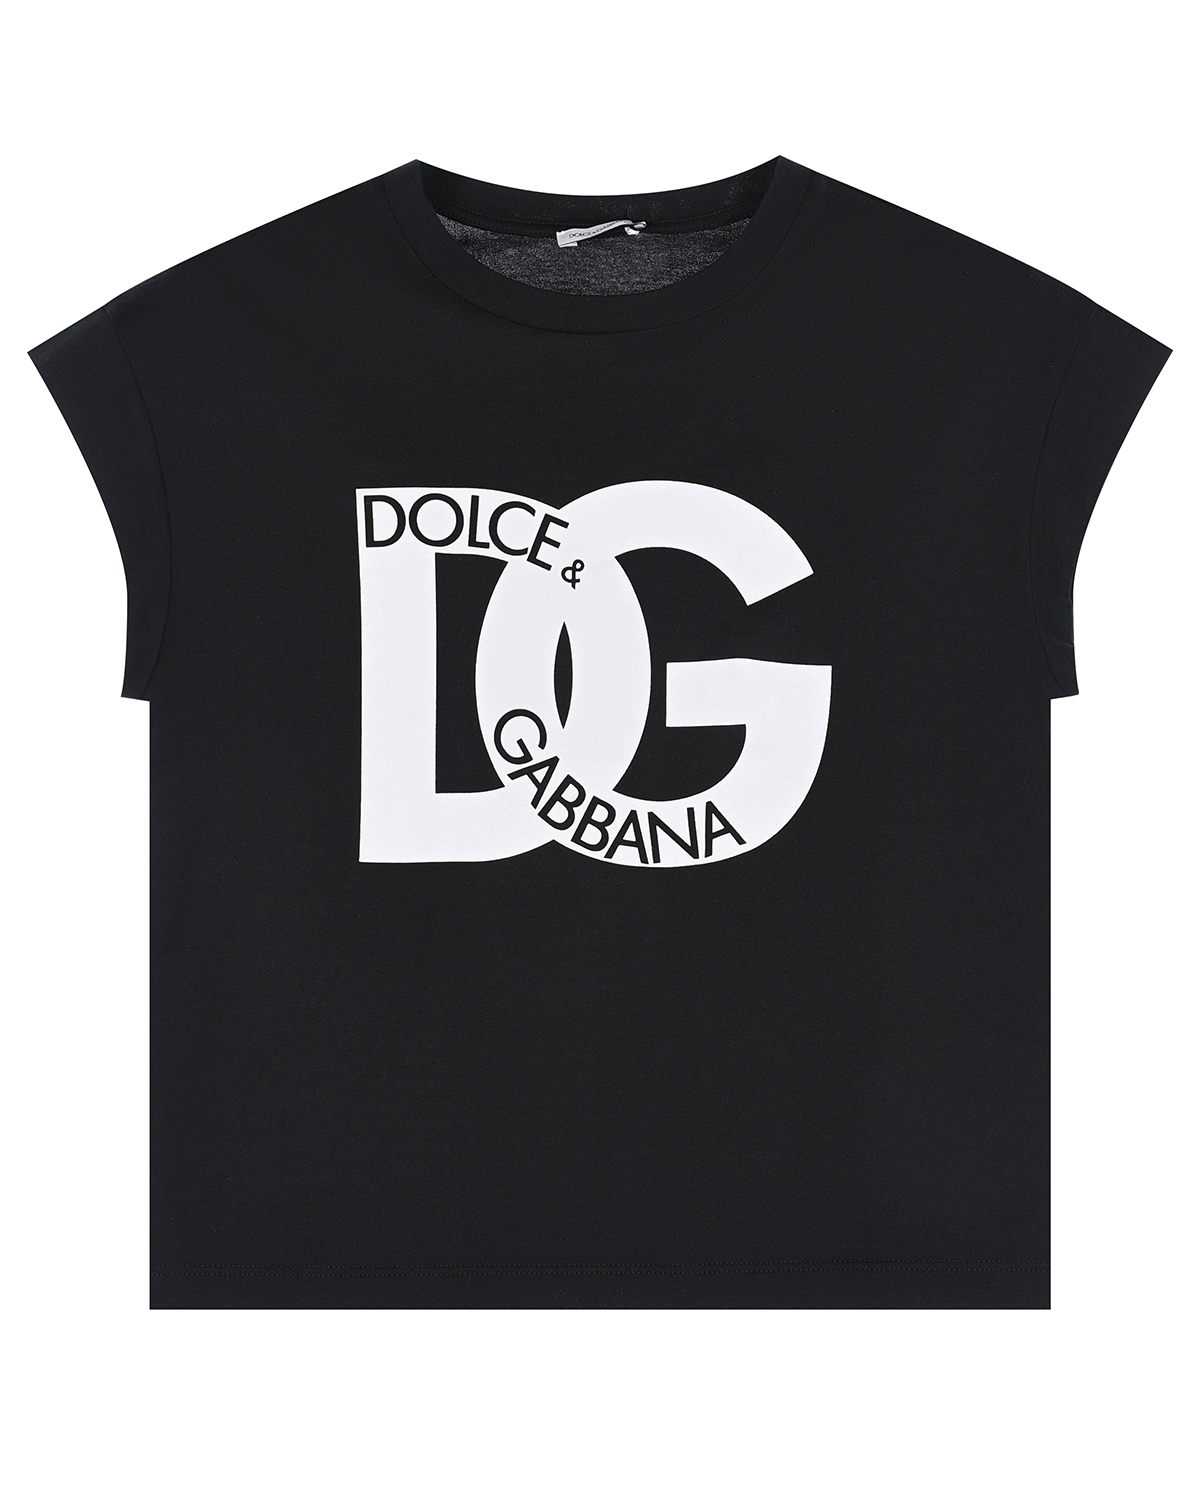 Черная футболка с крупным белым лого Dolce&Gabbana футболка с крупным лого голубая msgm